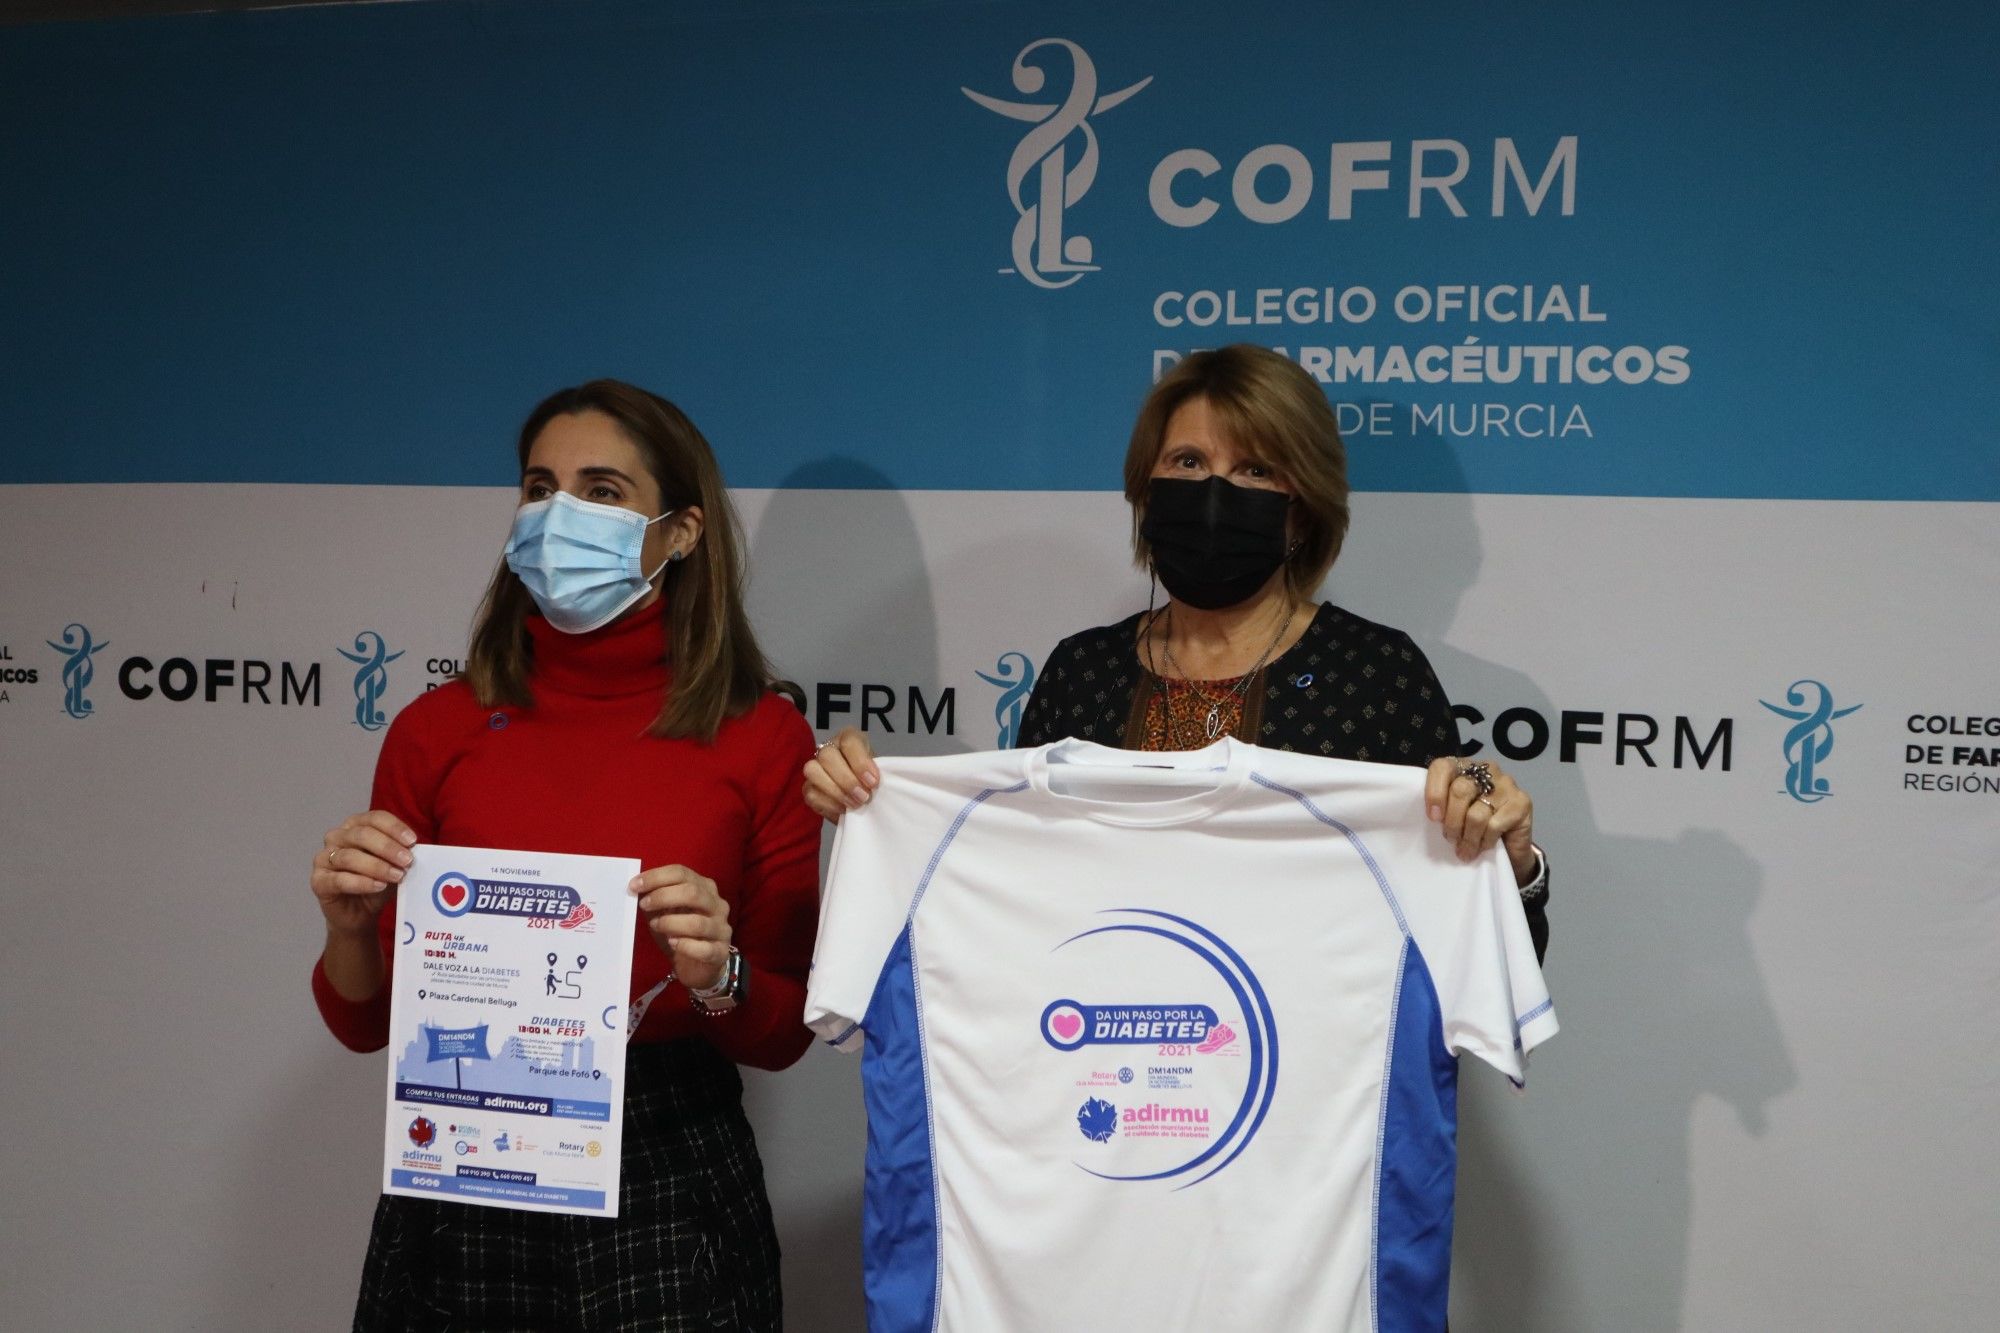 El COFRM y la Asociación Murciana para el Cuidado de la Diabetes (ADIRMU) firman un convenio de colaboración para mejorar la calidad de vida de las personas diabéticas